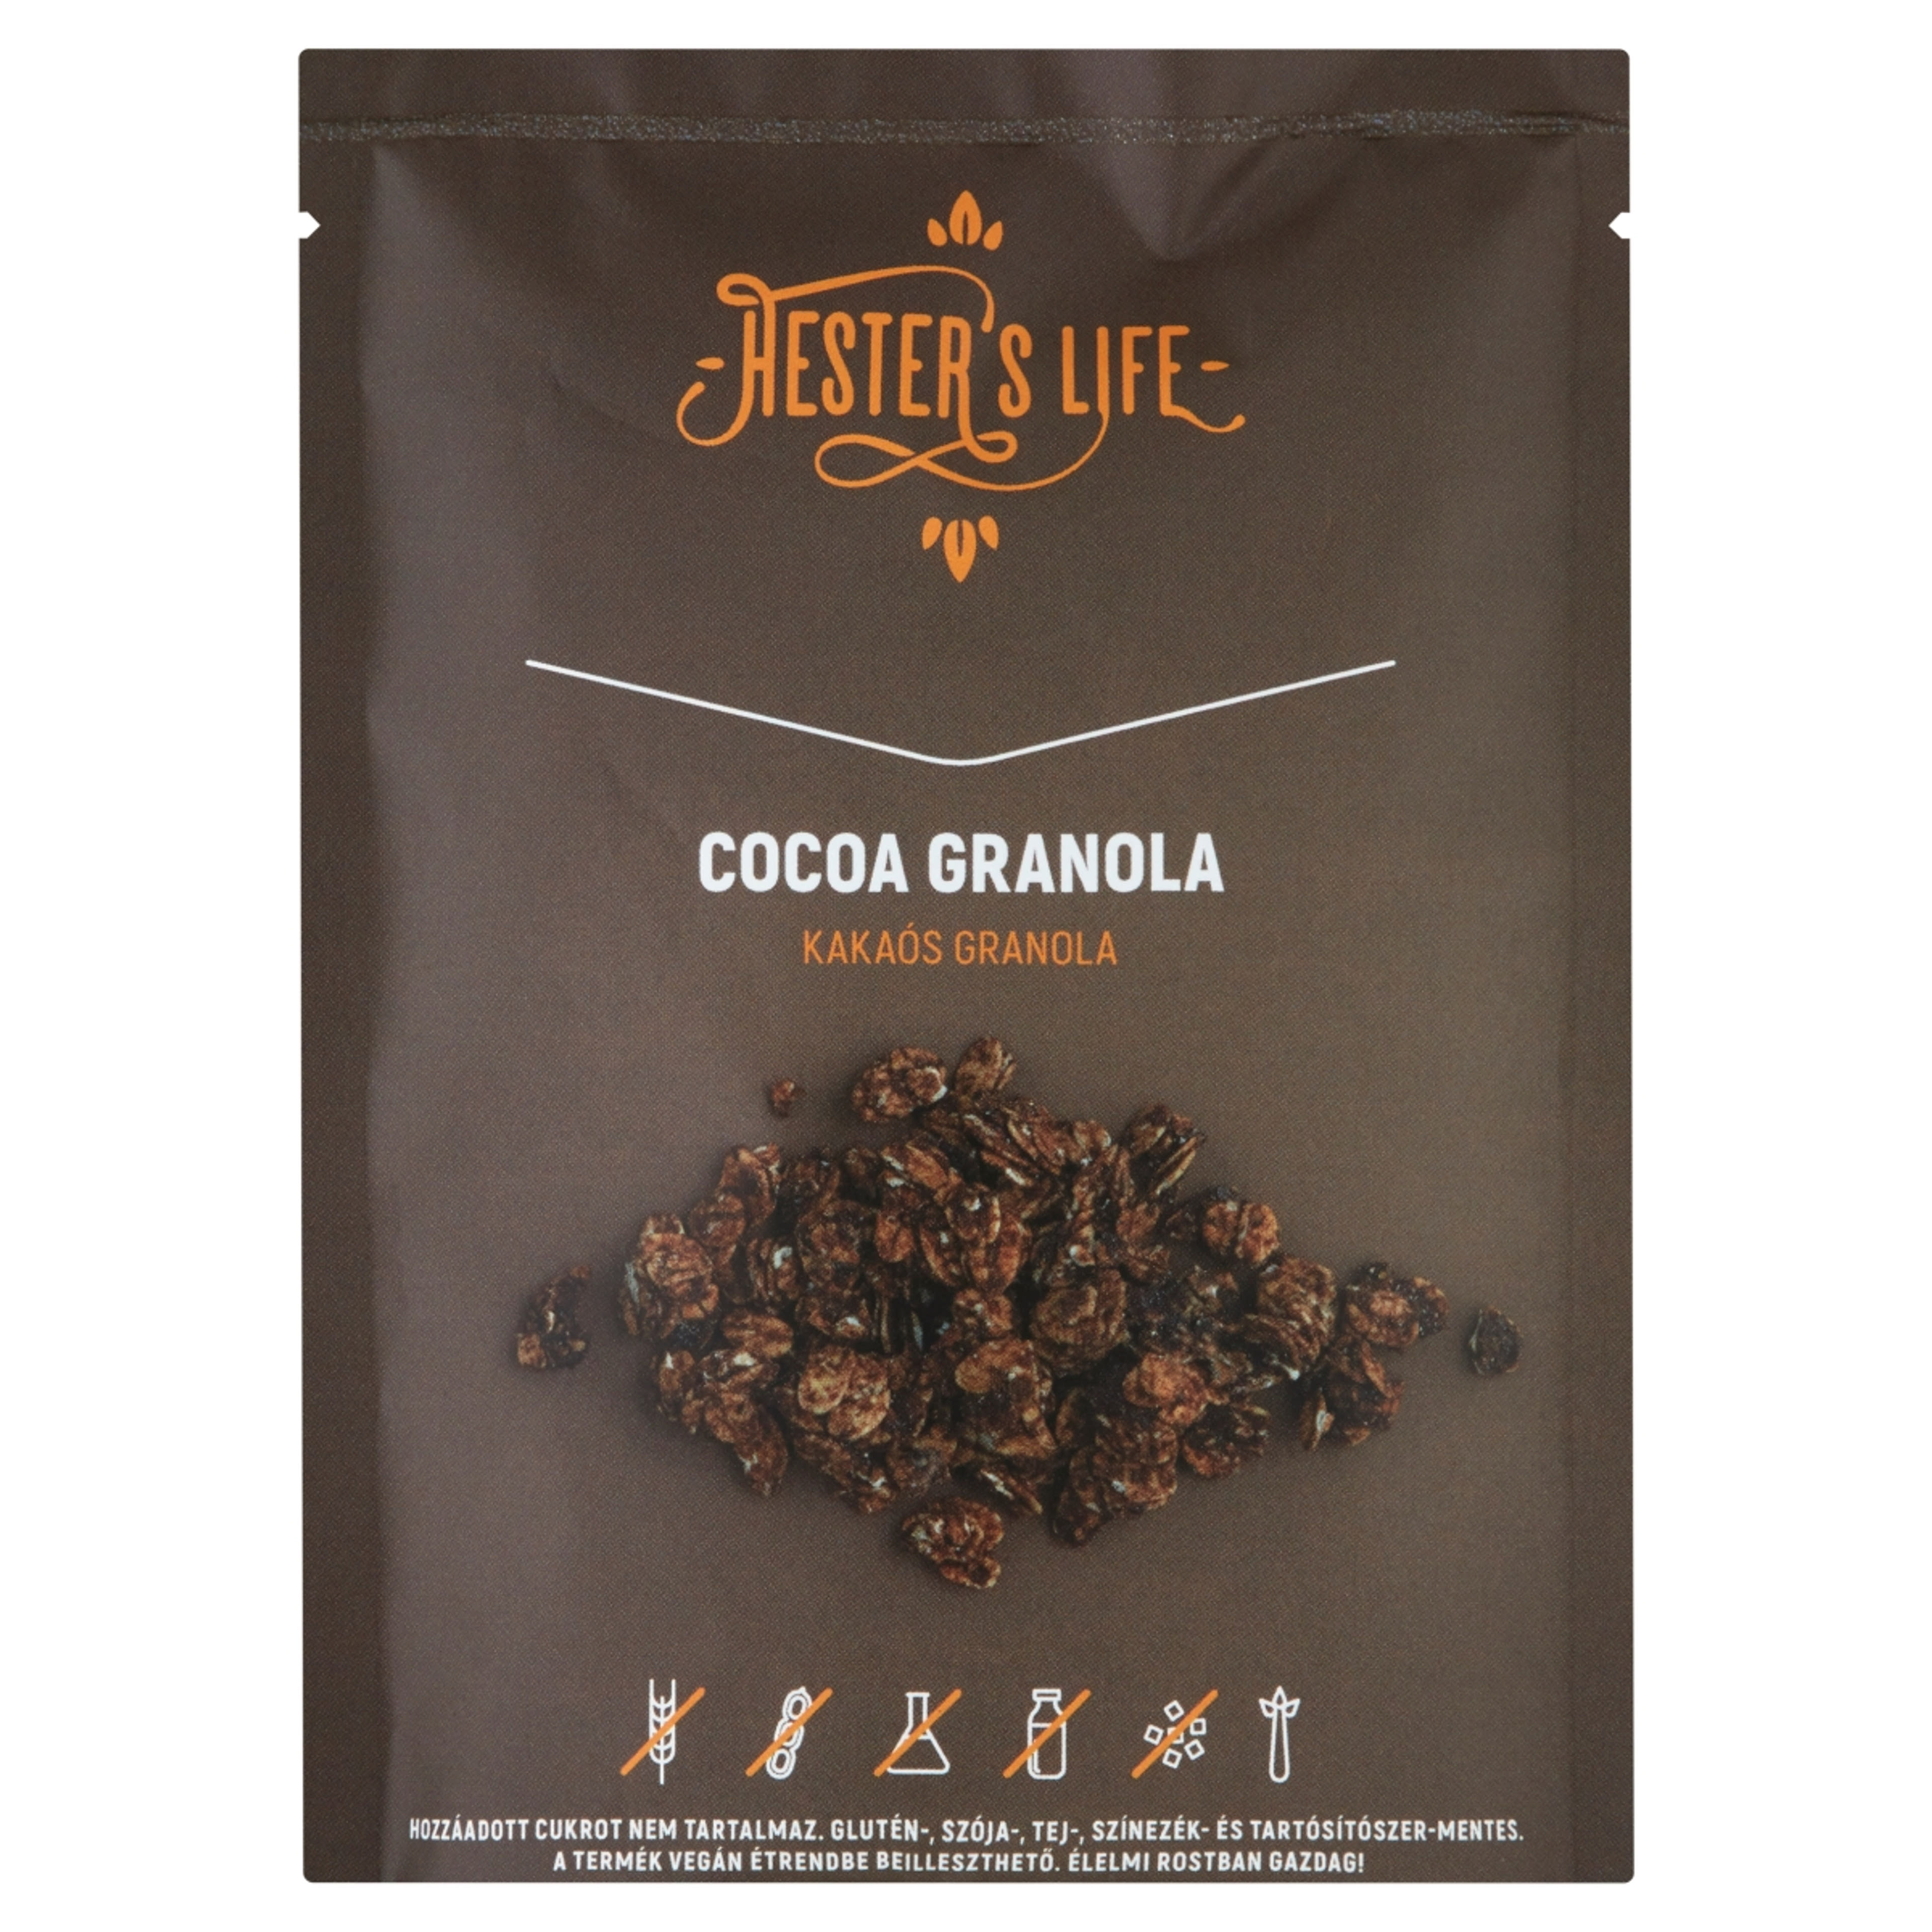 Hester's life cocoa granola - 60 g-1